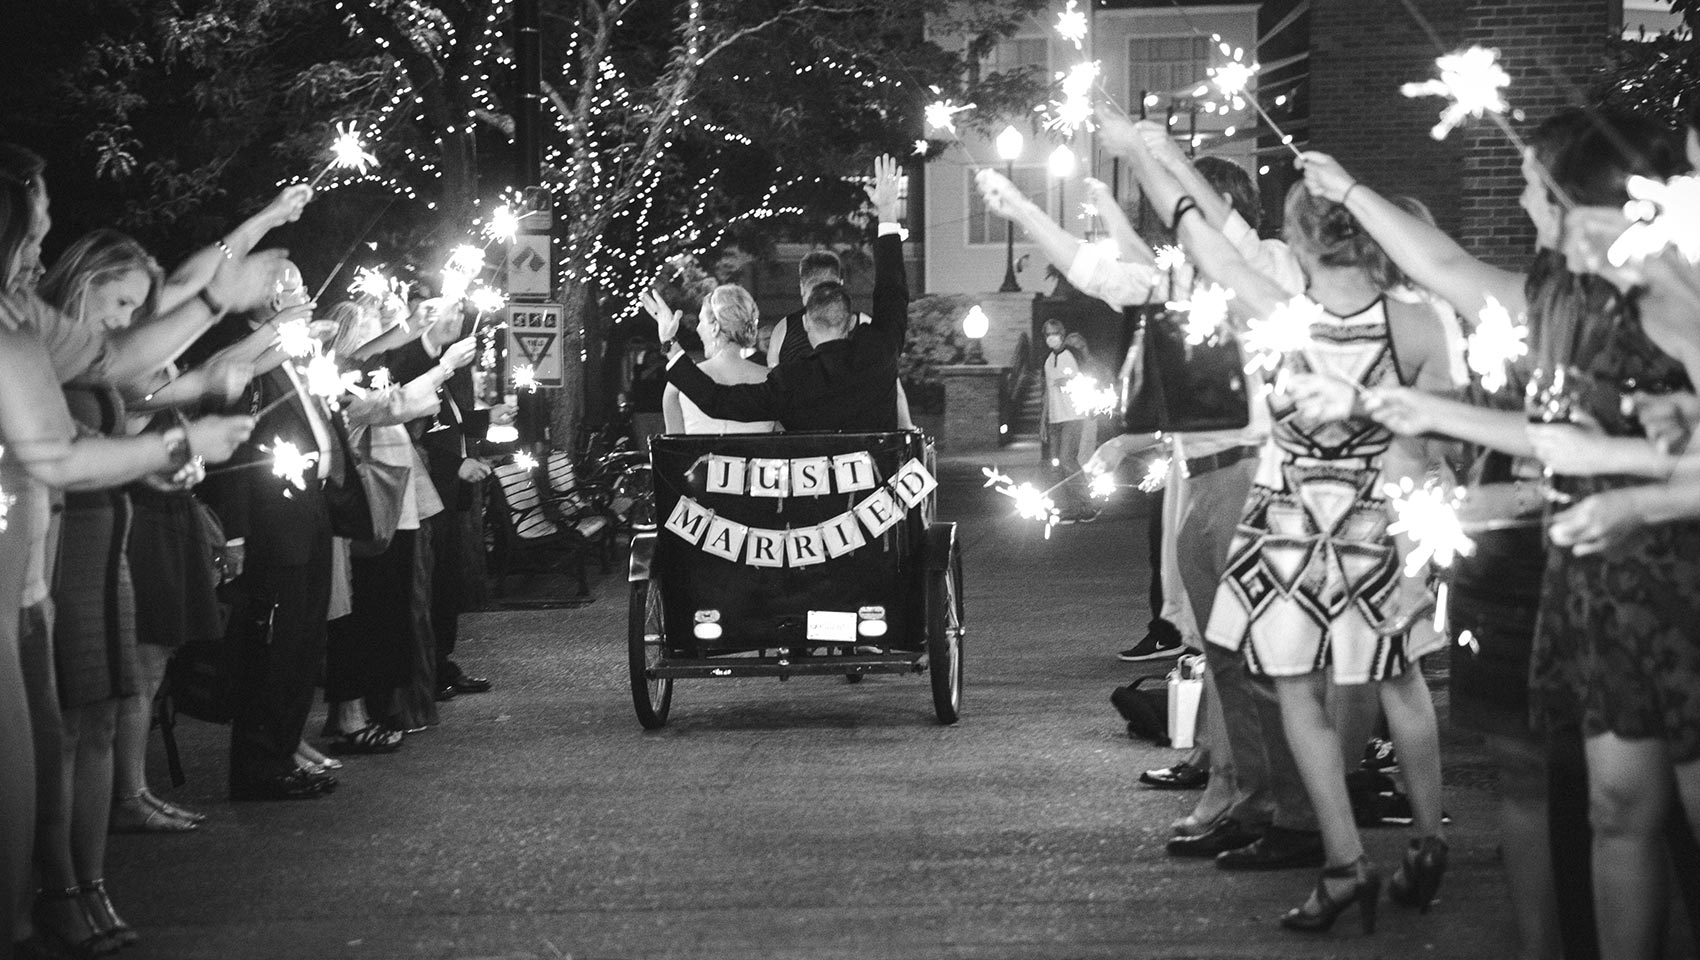 bride and groom riding in pedicab at wedding ceremony at outdoor Portland wedding venue